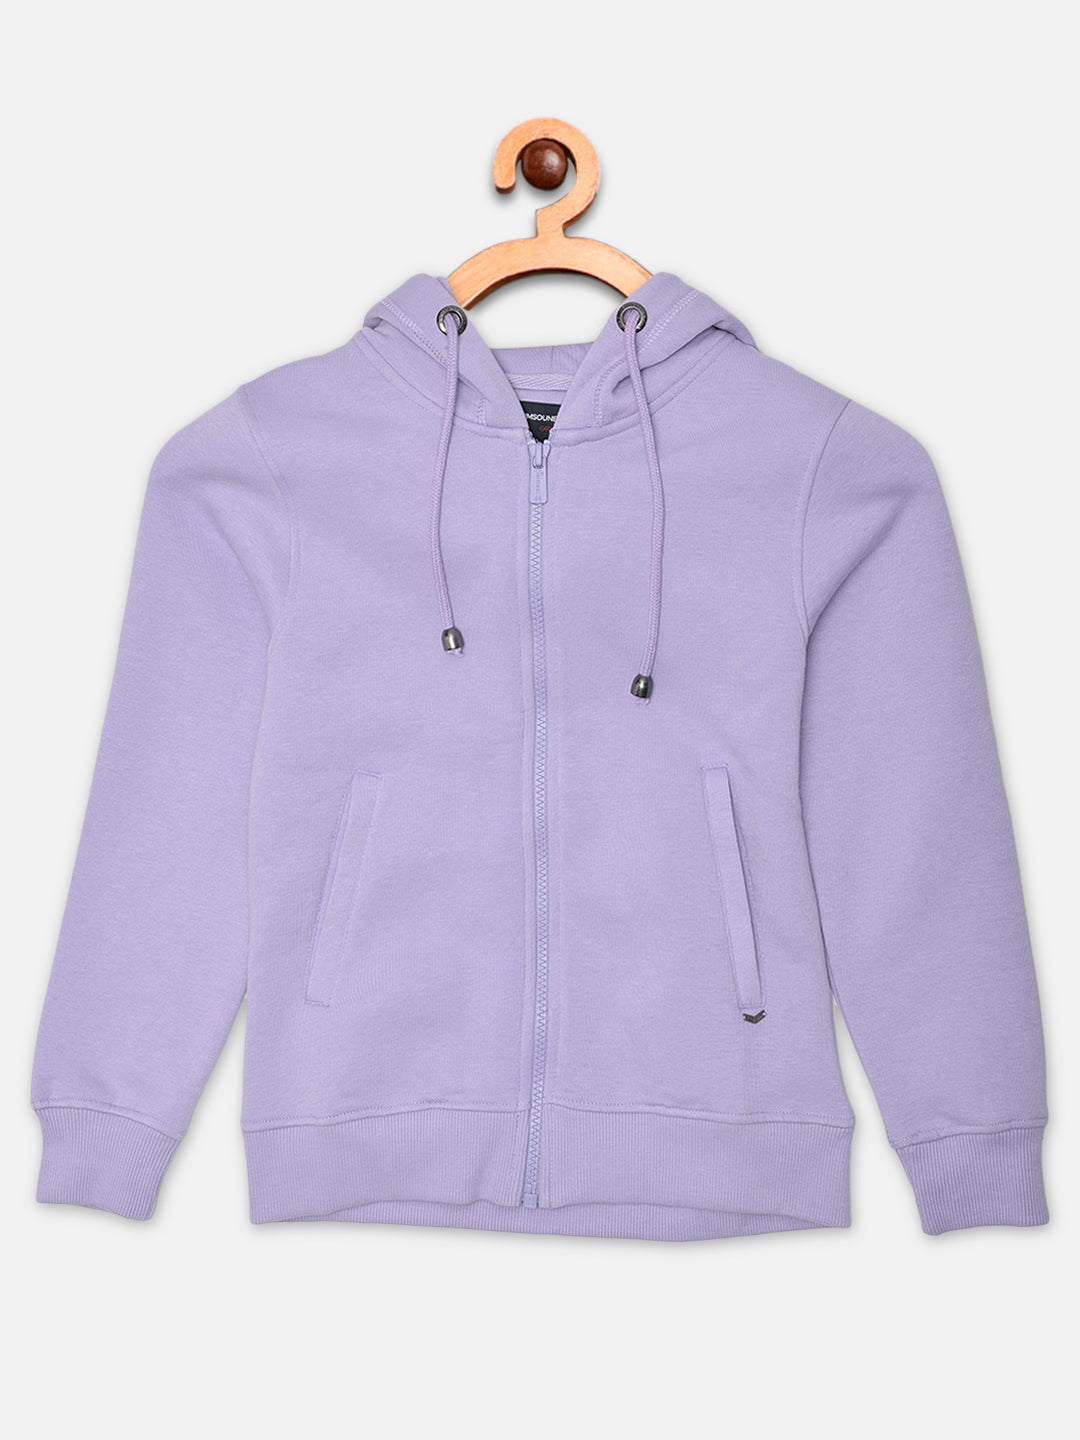 Purple Hooded Sweatshirt - Girls Sweatshirts